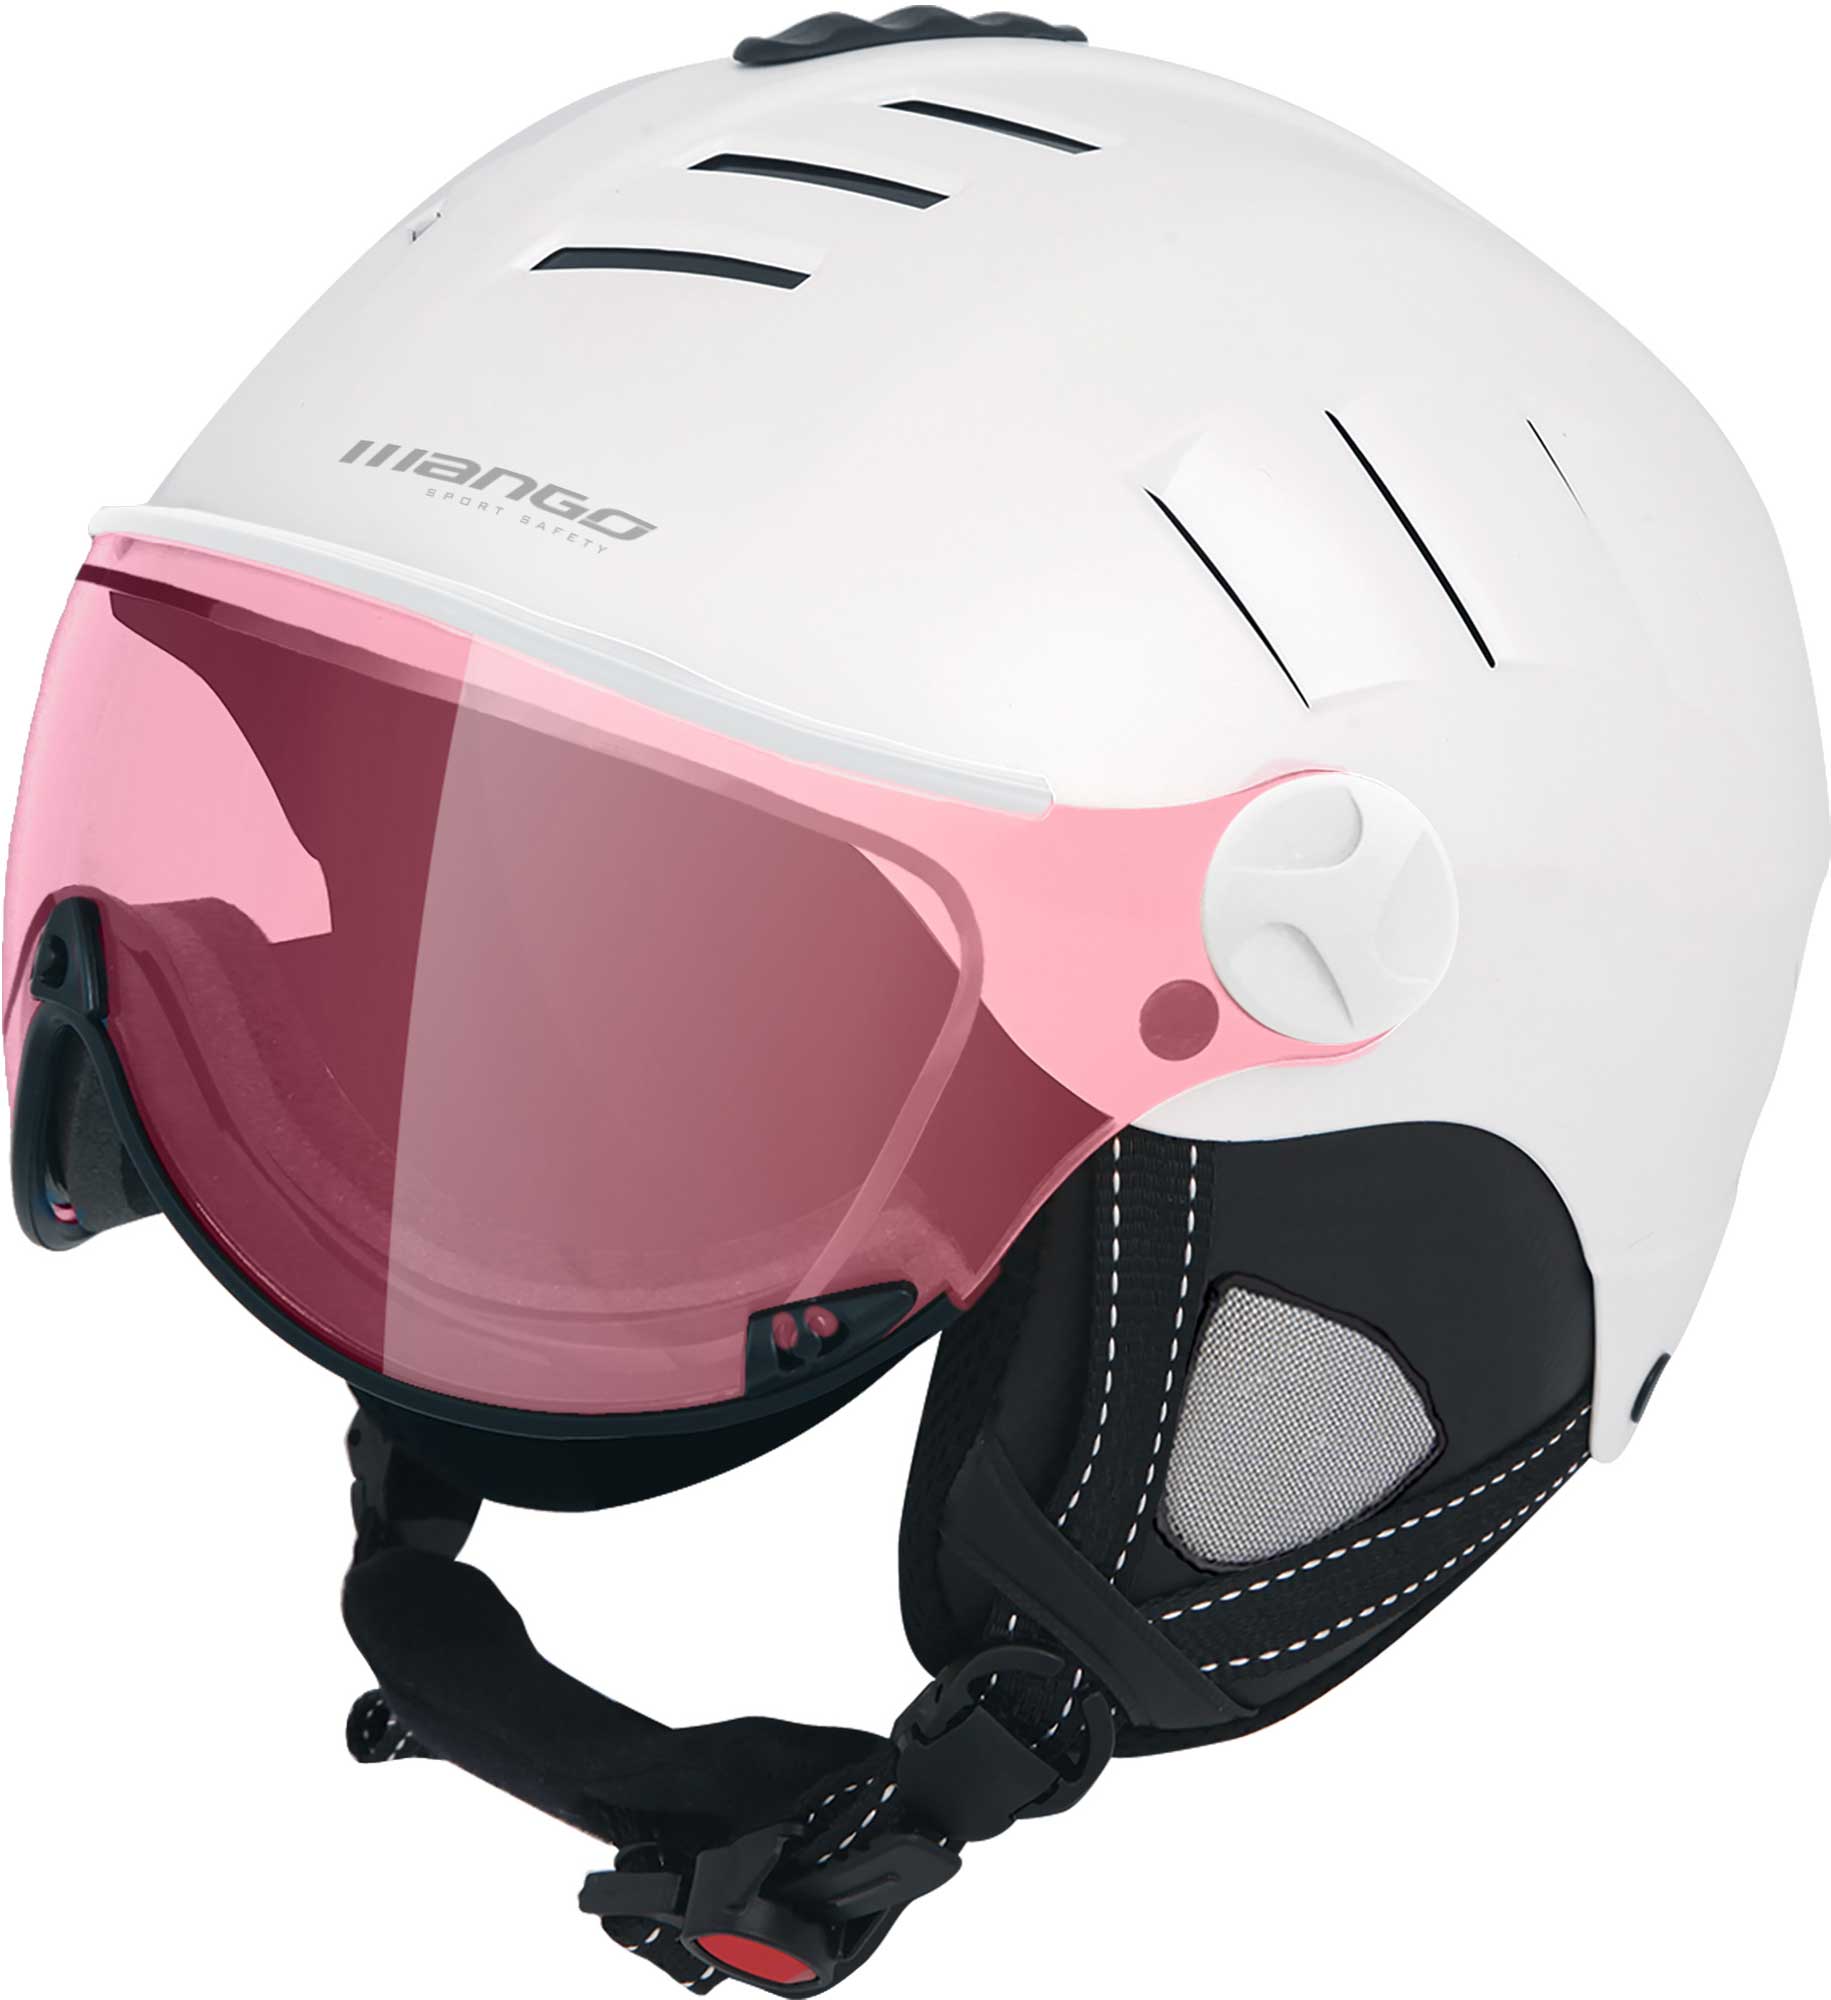 Women’s ski helmet with a visor